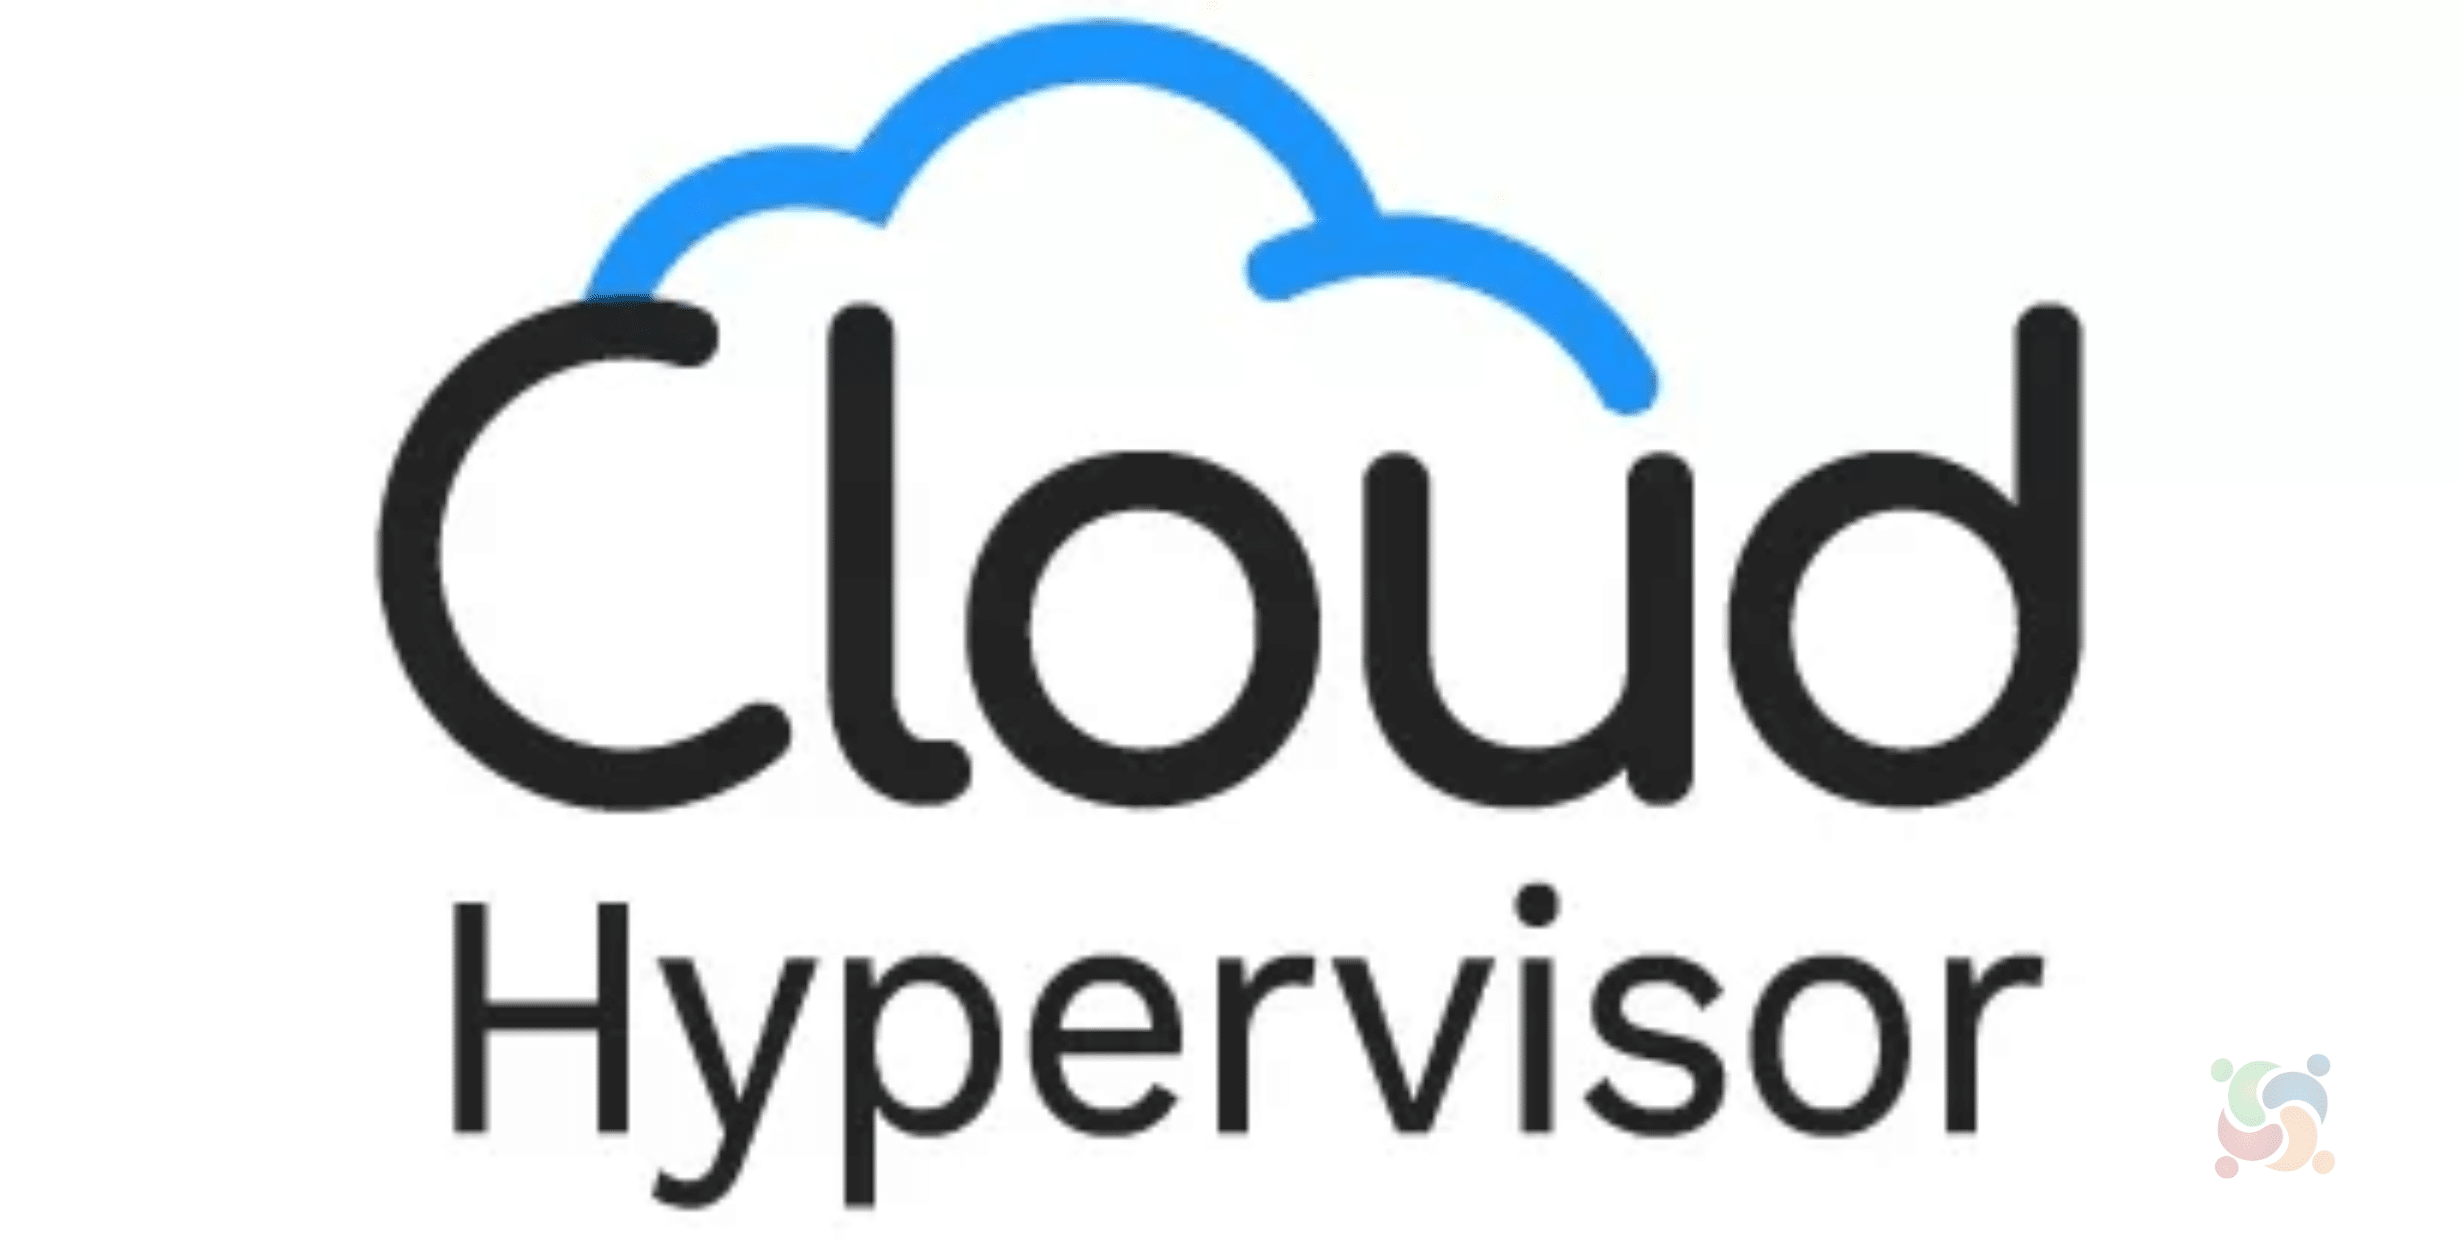 Cloud Hypervisor 35 lançado com poucos novos recursos e correções